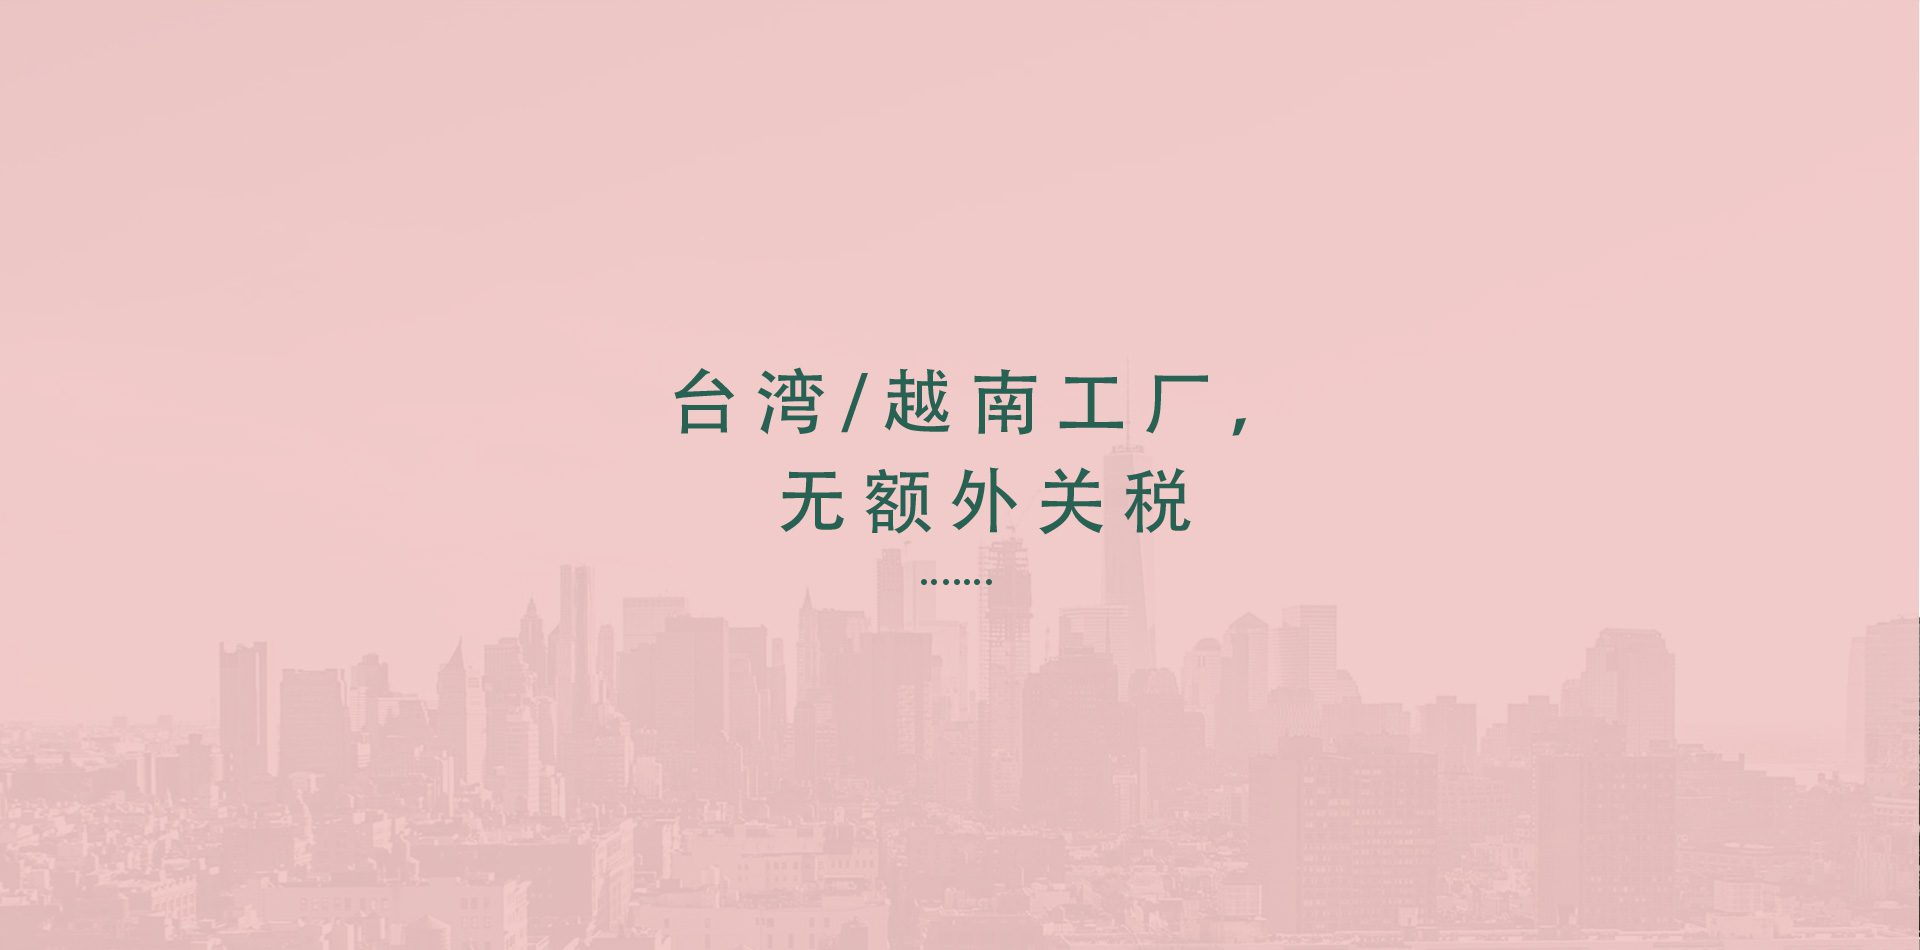 NO-EXTRA-DUTYbanner粉色版-中文版